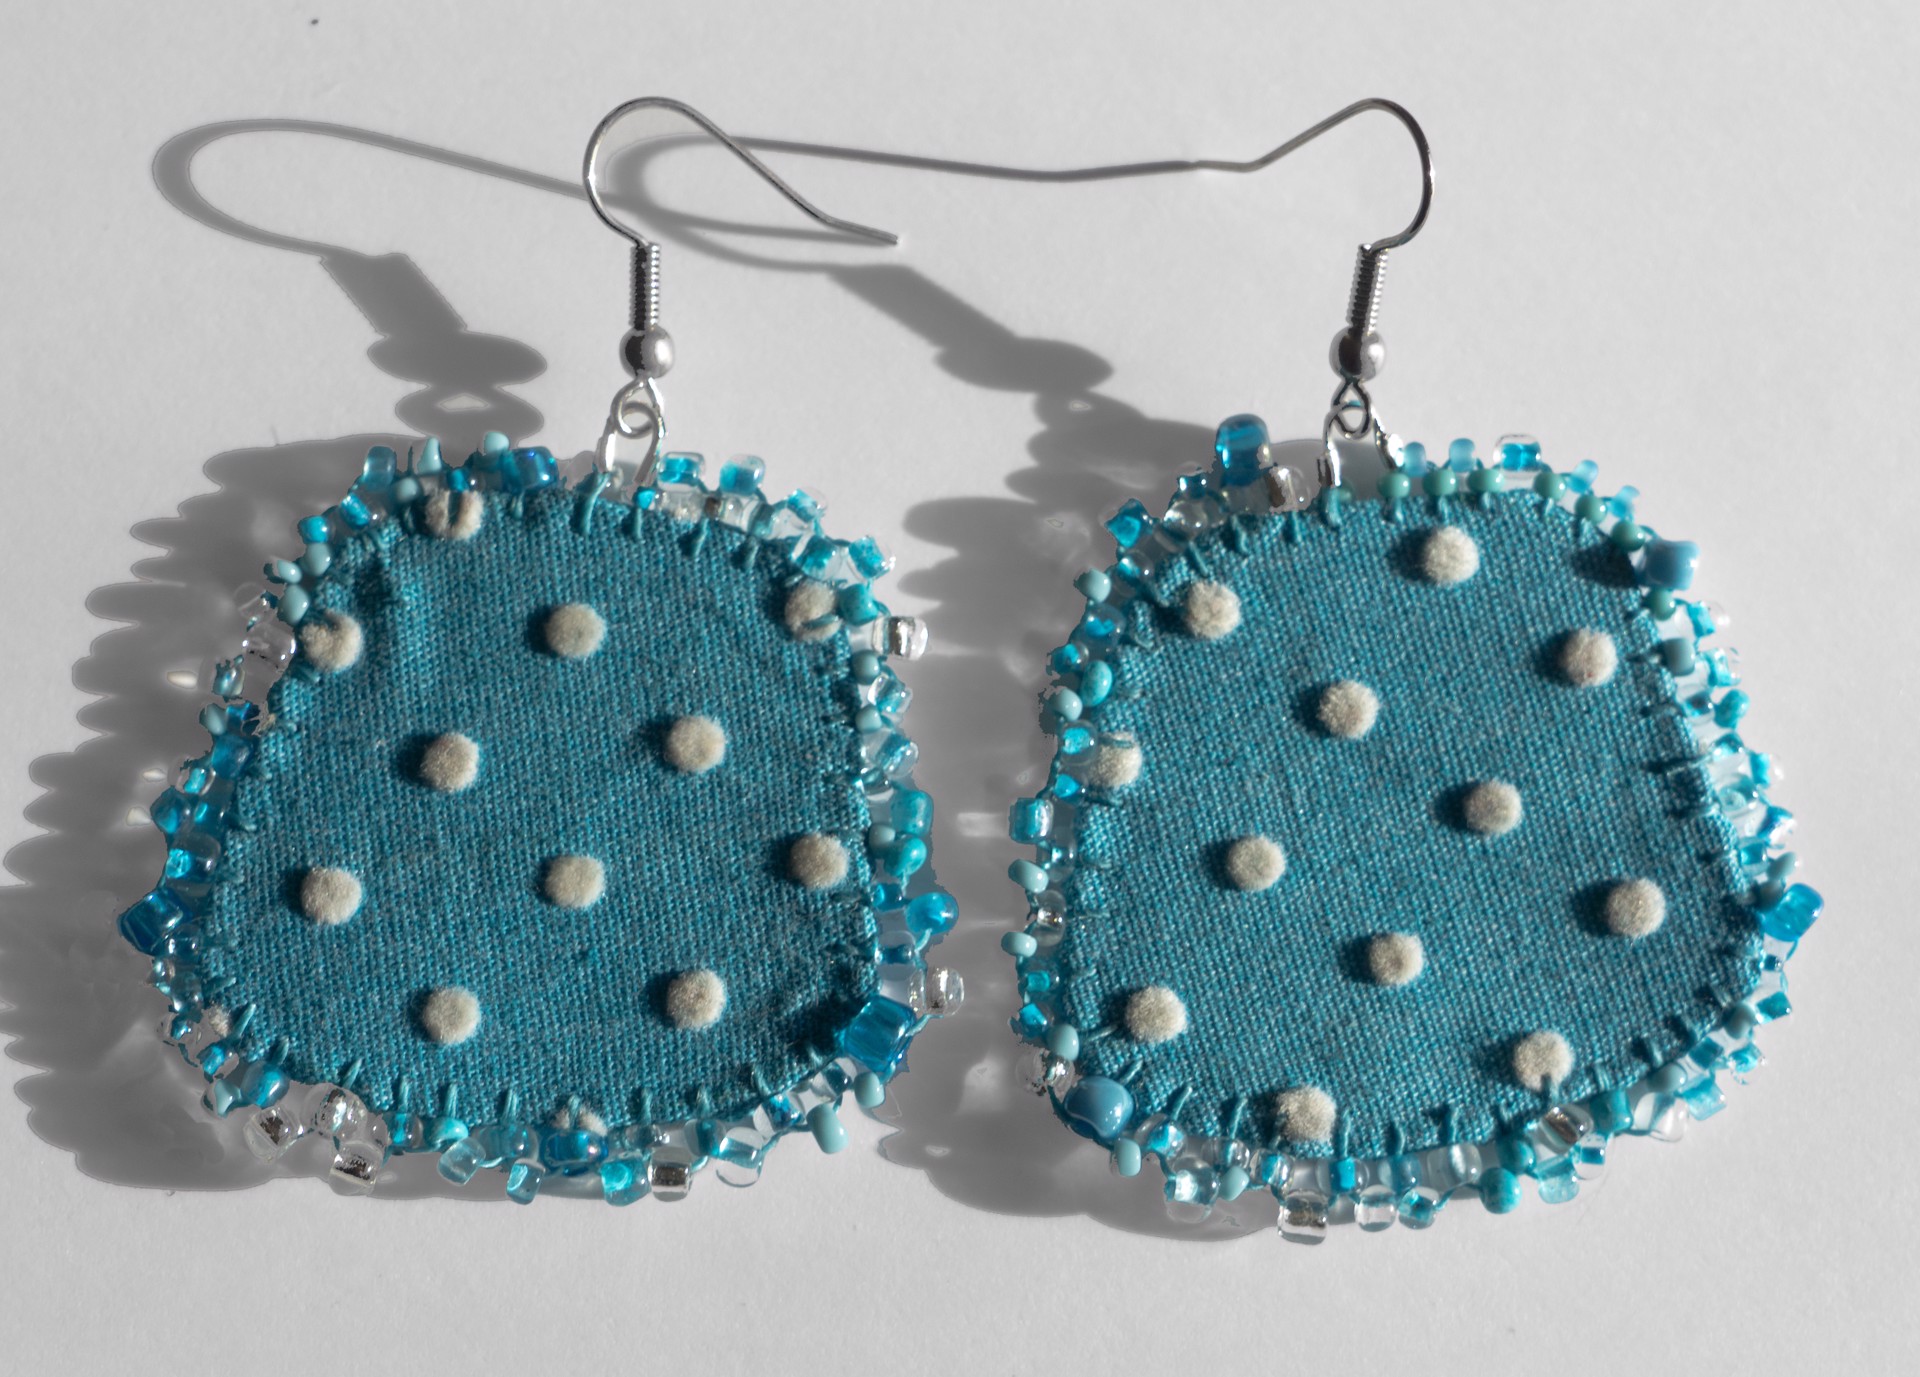 Blue polkadot earrings by Hattie Lee Mendoza